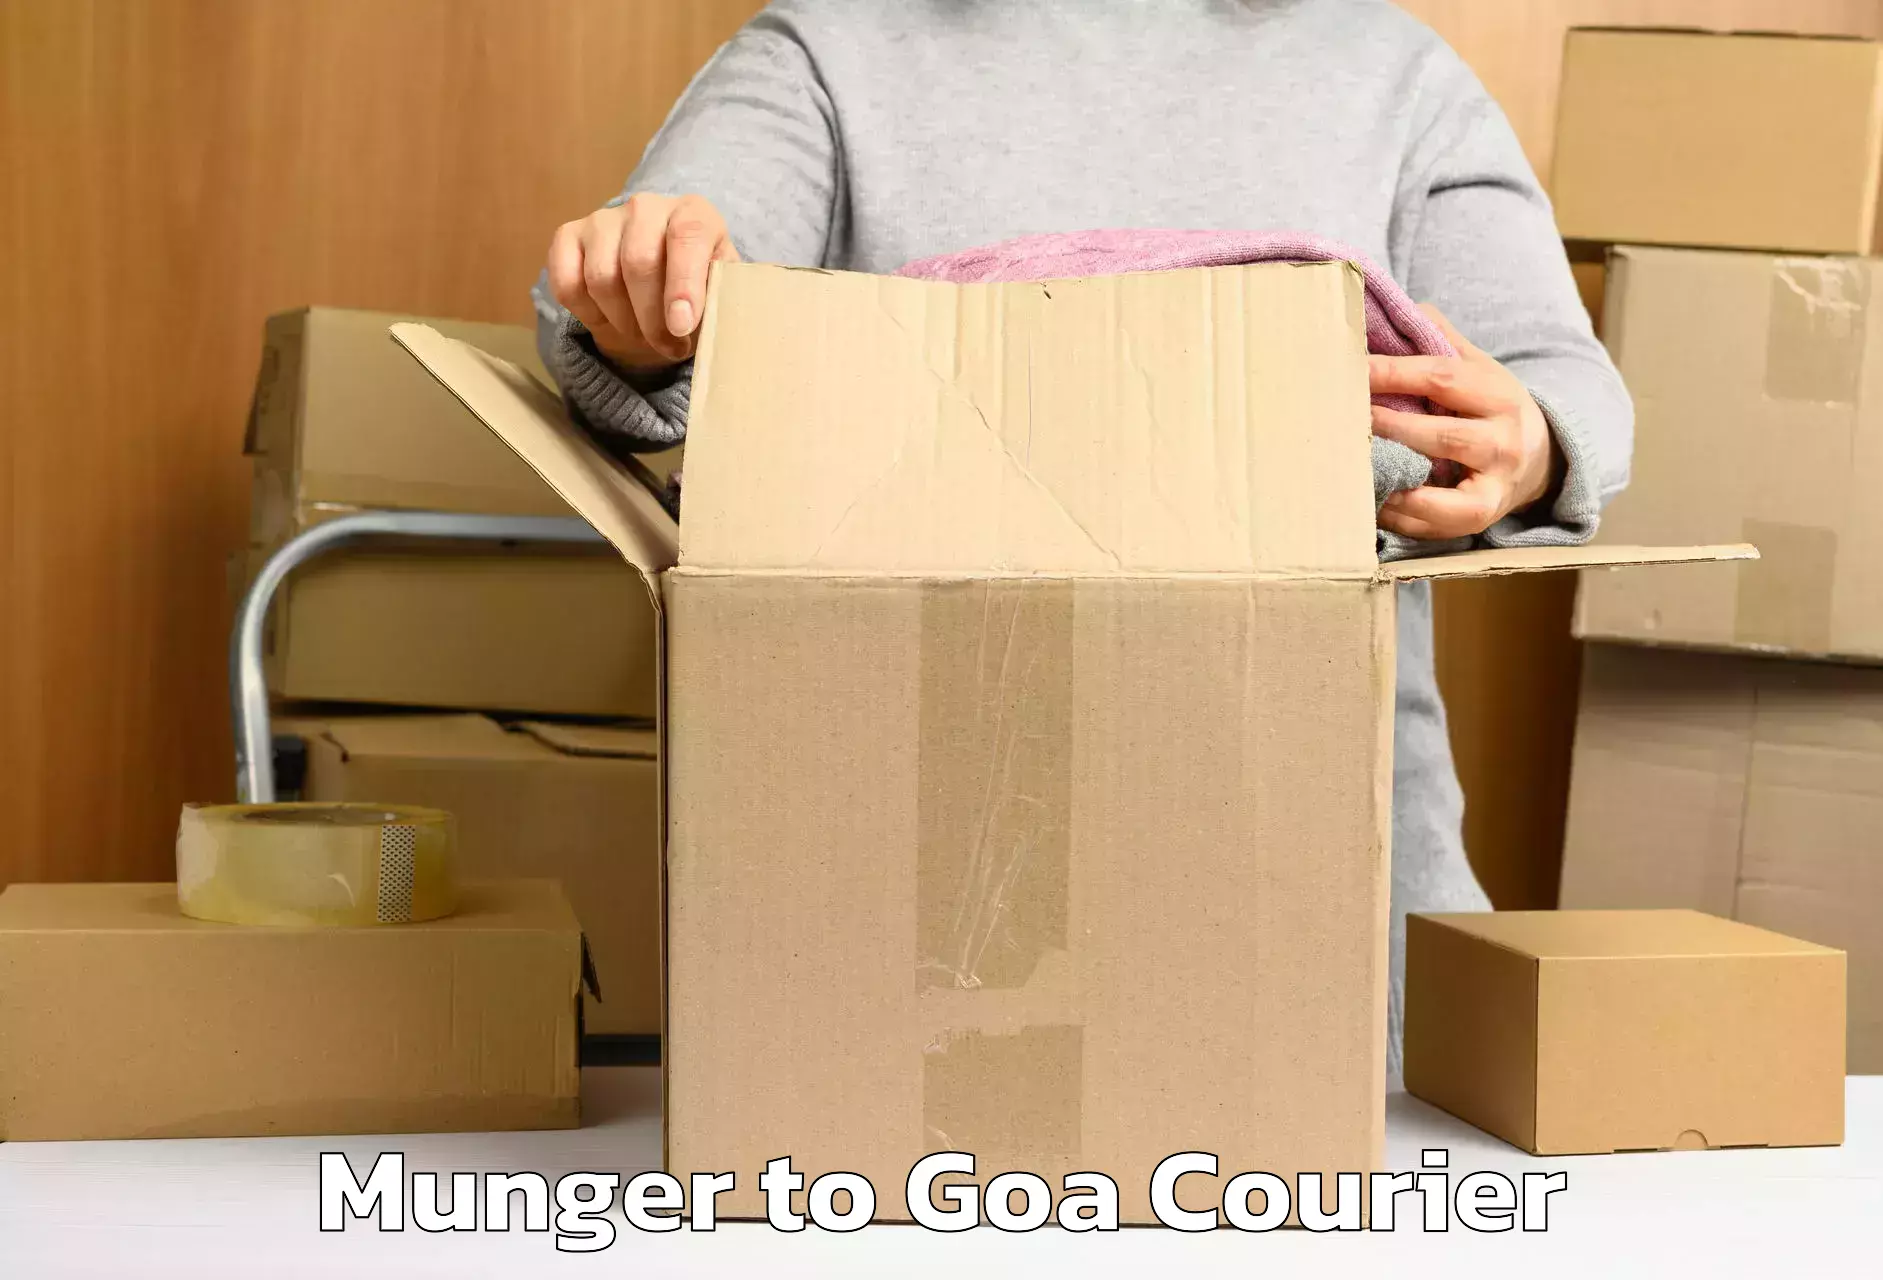 Luggage transit service Munger to Goa